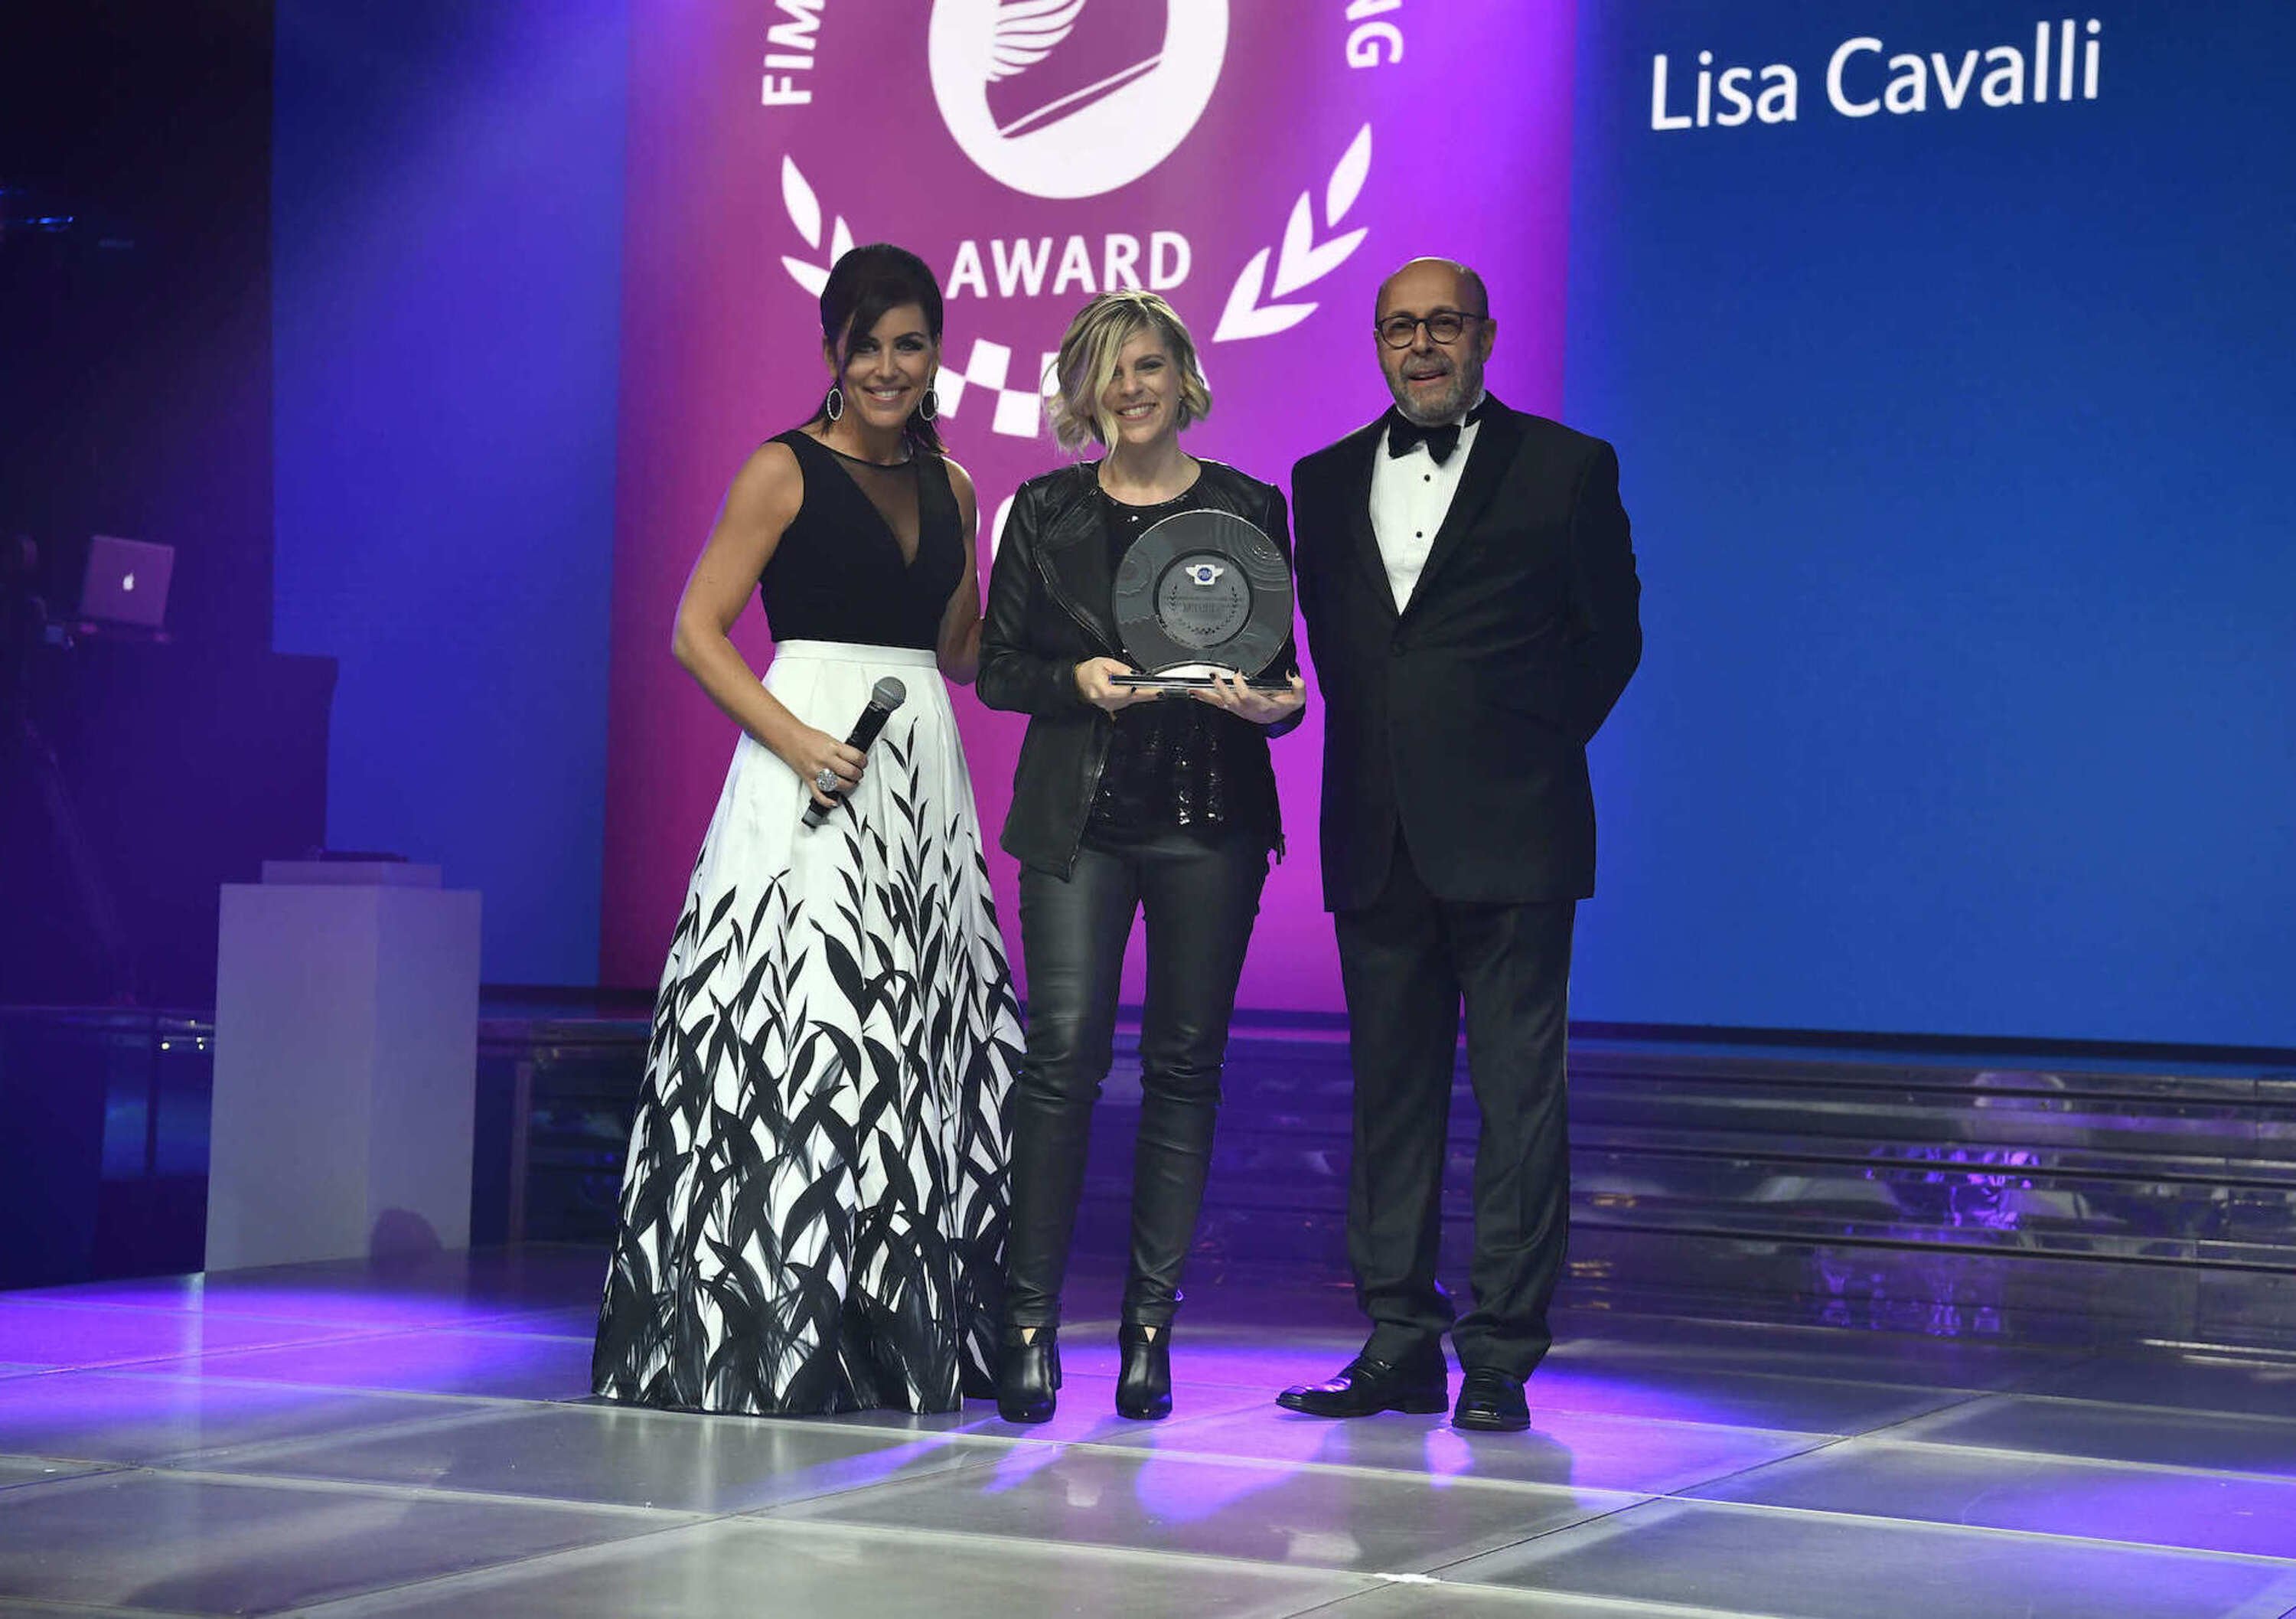 MissBiker, con Lisa Liz Cavalli, vince il FIM Women in Motorcycling Award 2019